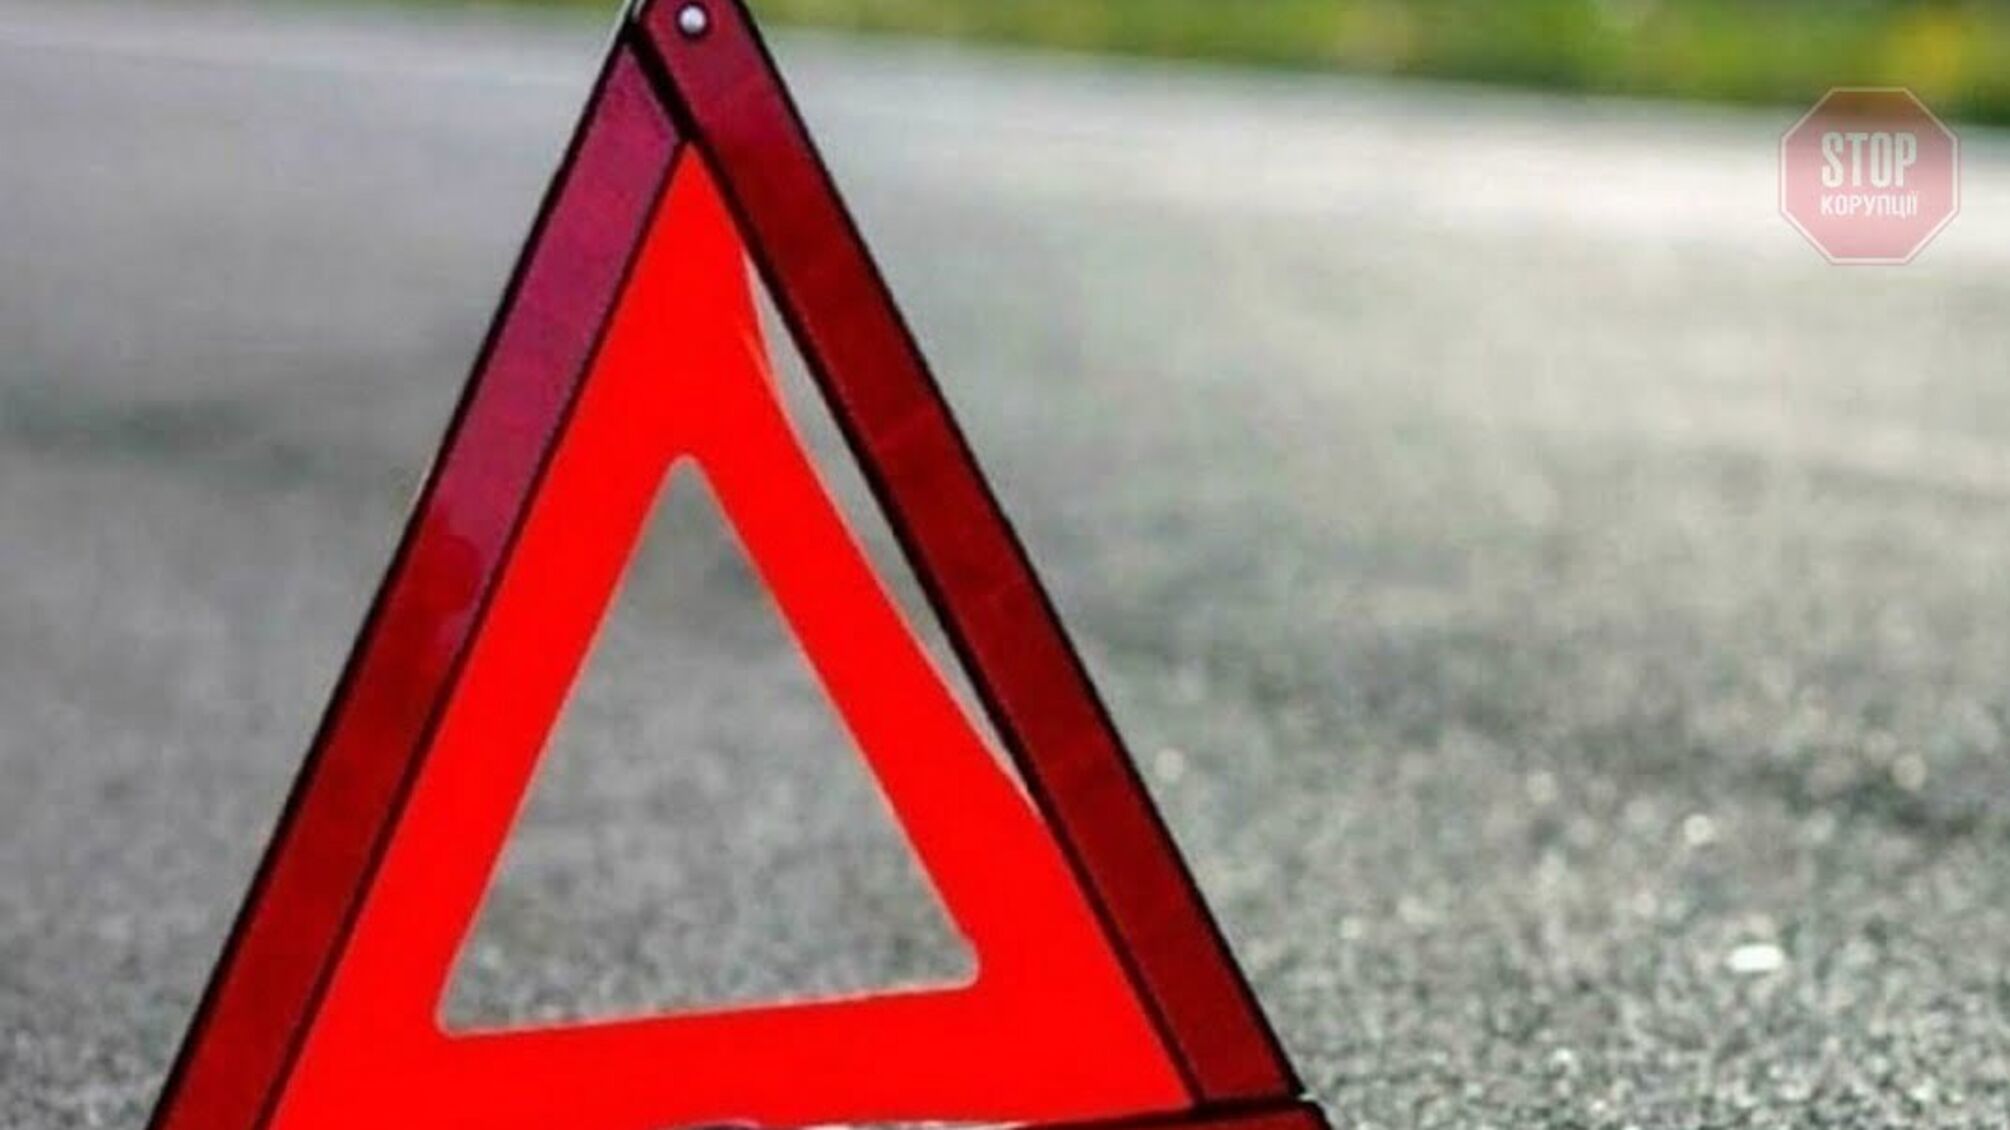 Новости Харькова: автомобиль сбил пьяного пешехода на улице Веснина